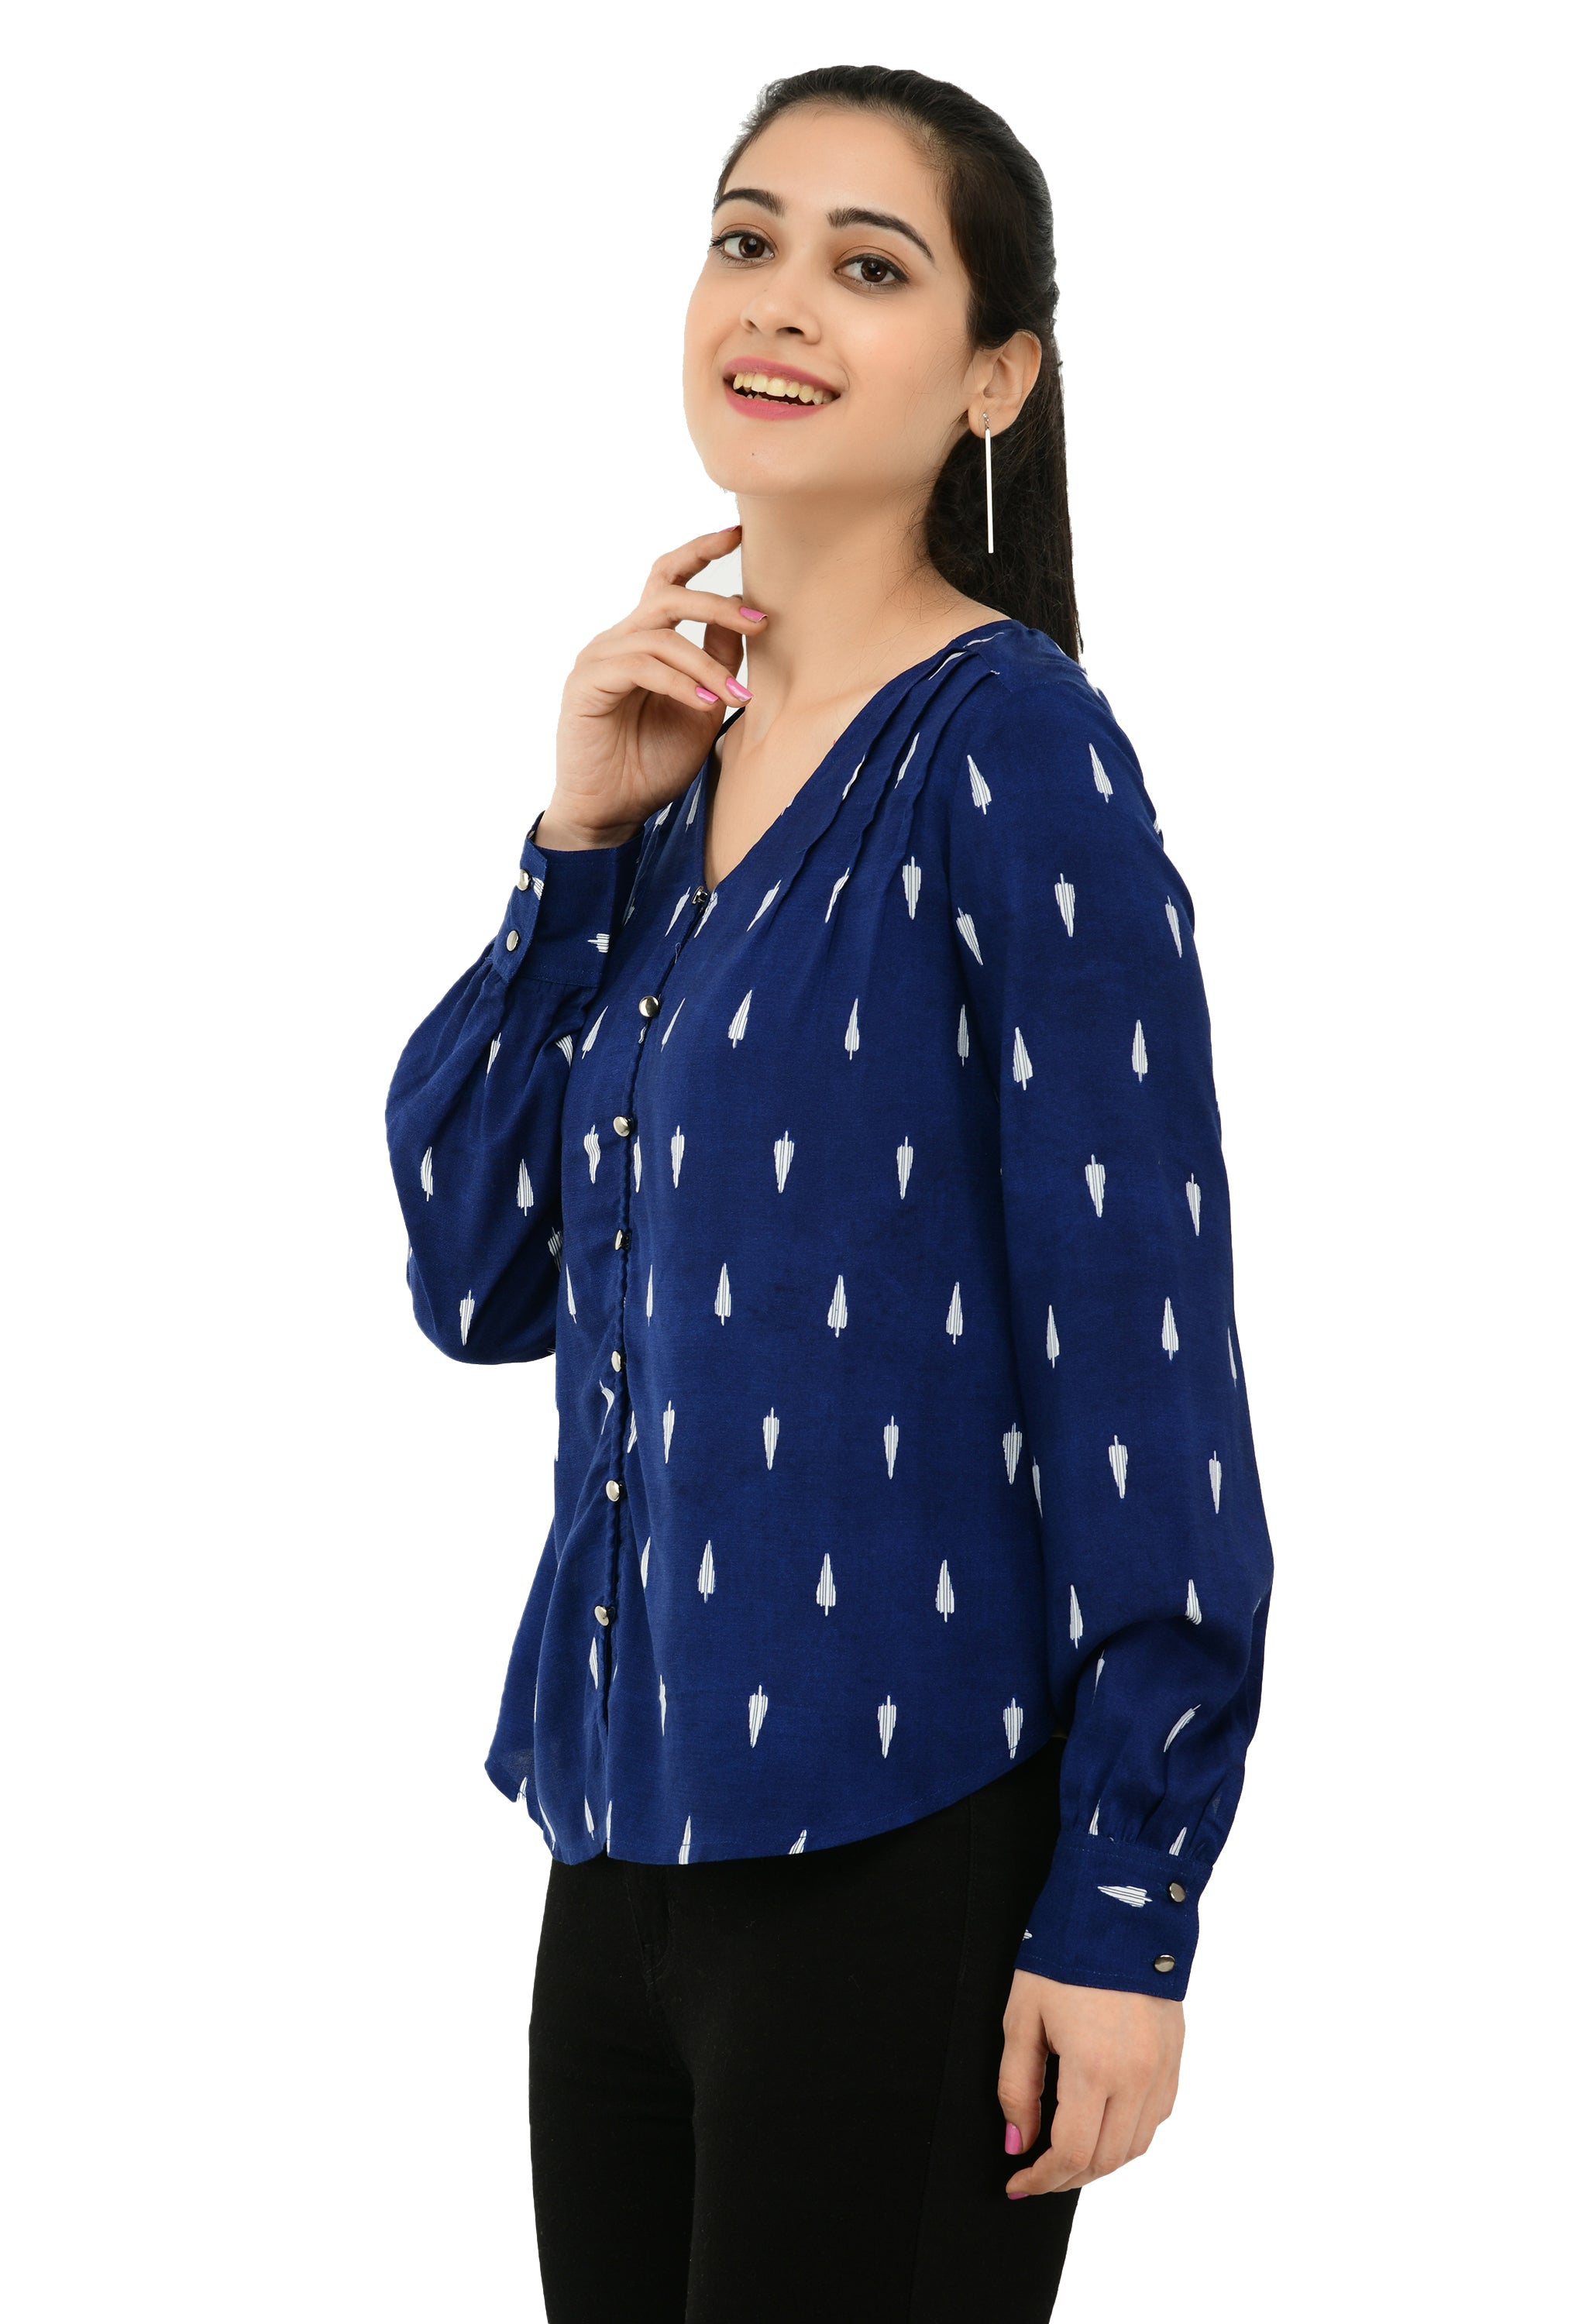 Women Navy Blue Shirt Style Top